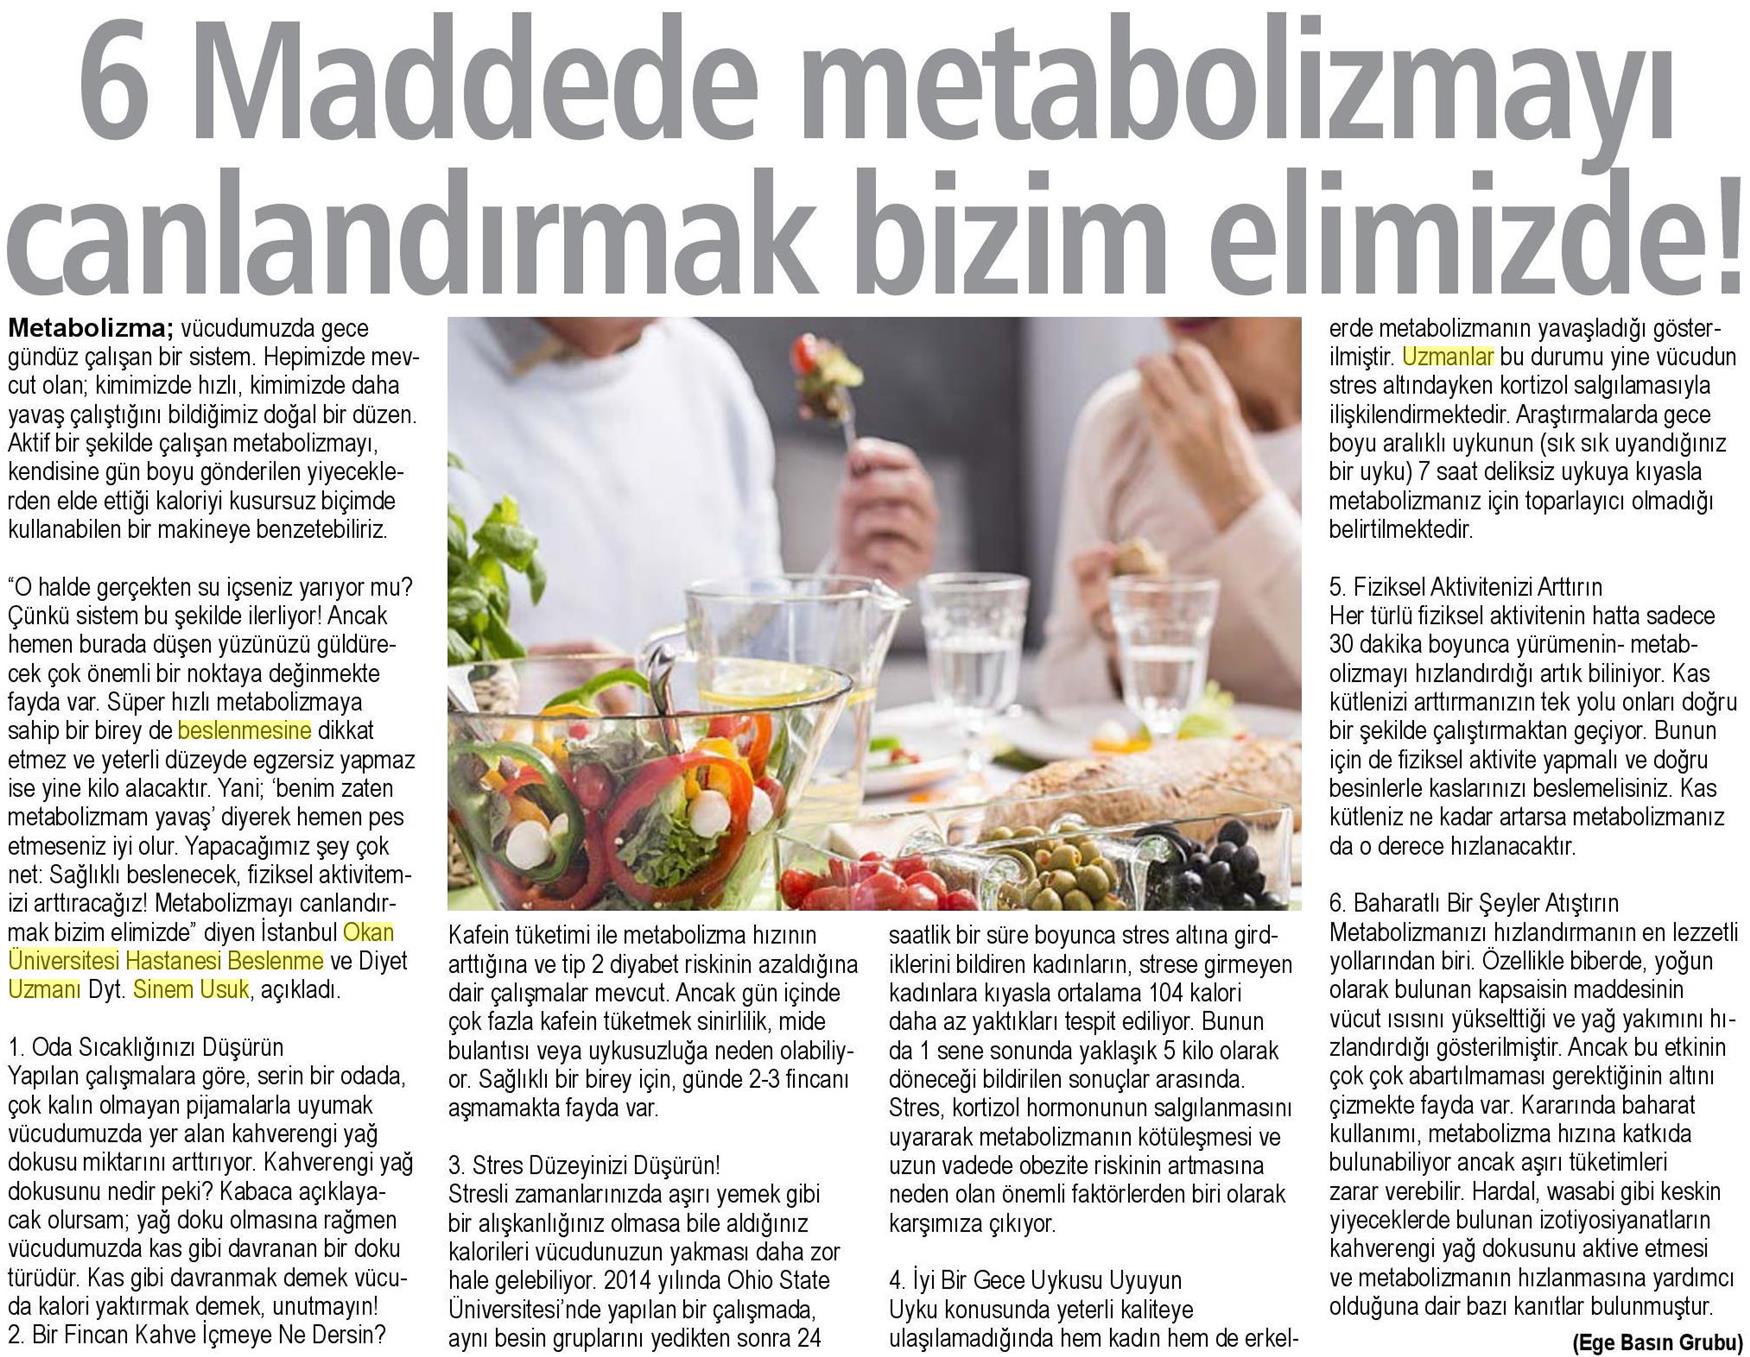 16.04.2019 Sağlık Gazetesi 6 MADDEDE METABOLİZMAYI CANLANDIRMAK BİZİM ELİMİZDE!